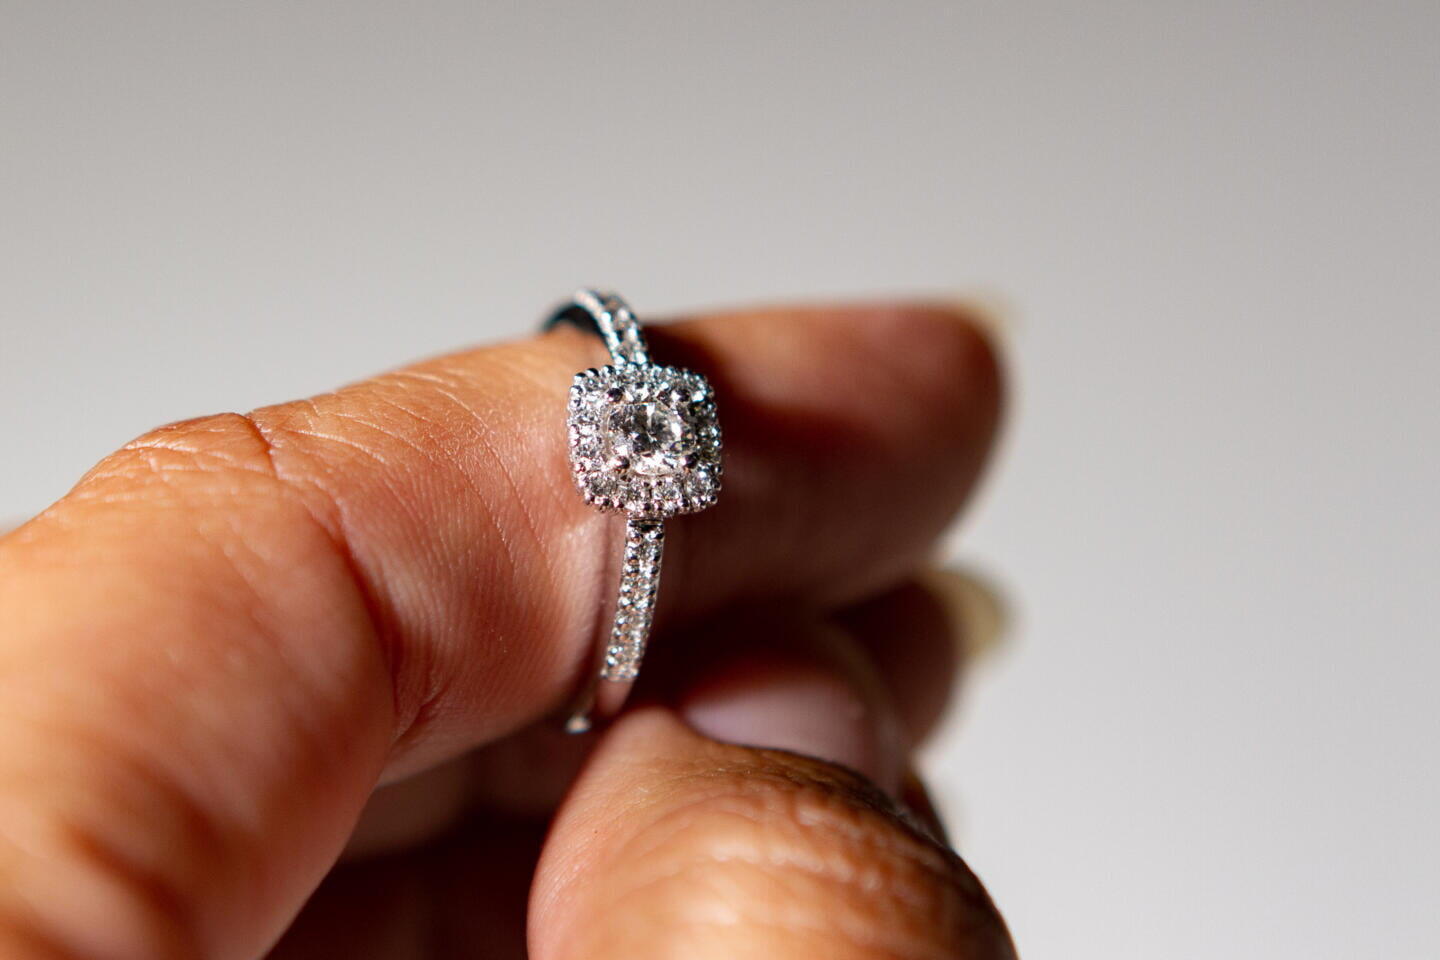 Laatukoru käyttää sormuksissaan vain korkean laatuluokituksen timantteja.